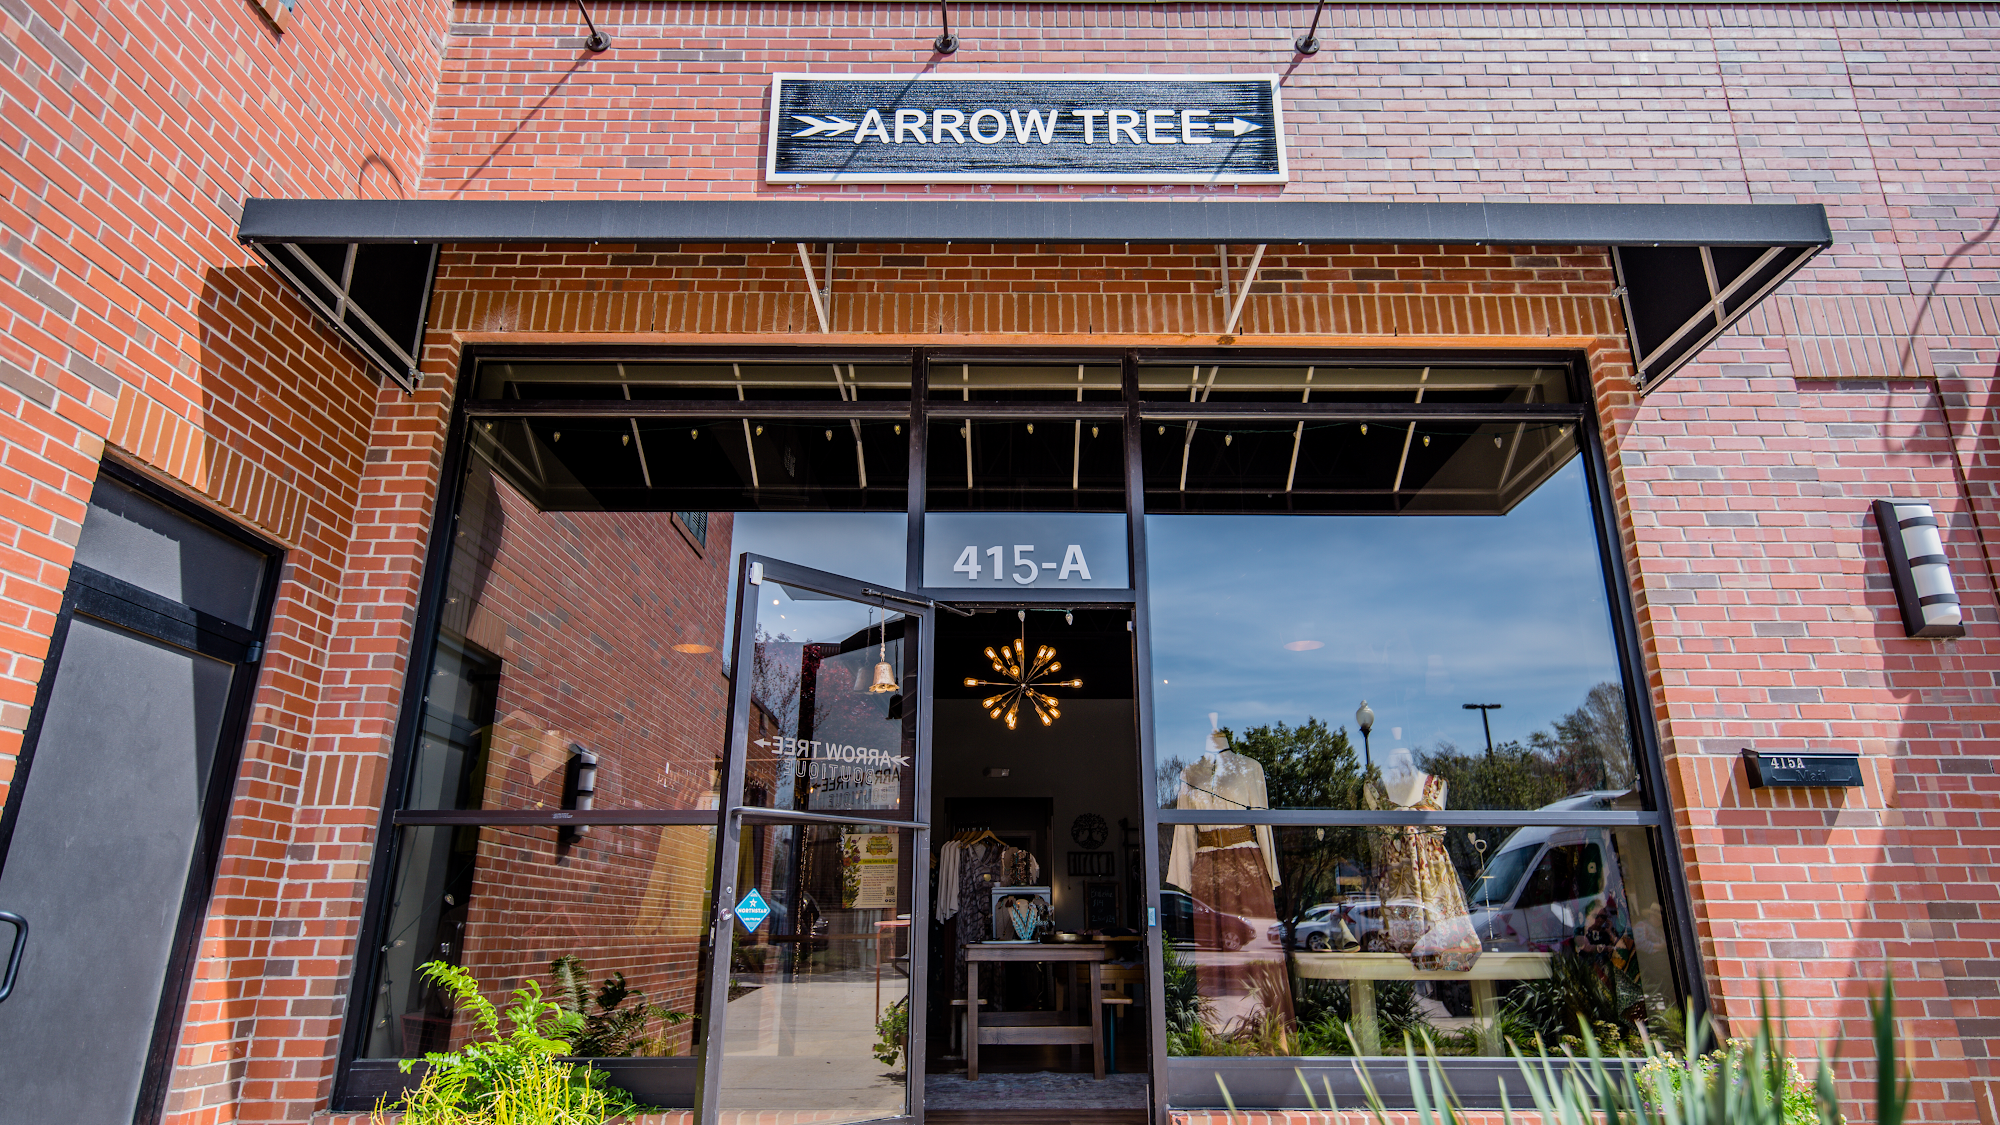 Arrow Tree Boutique